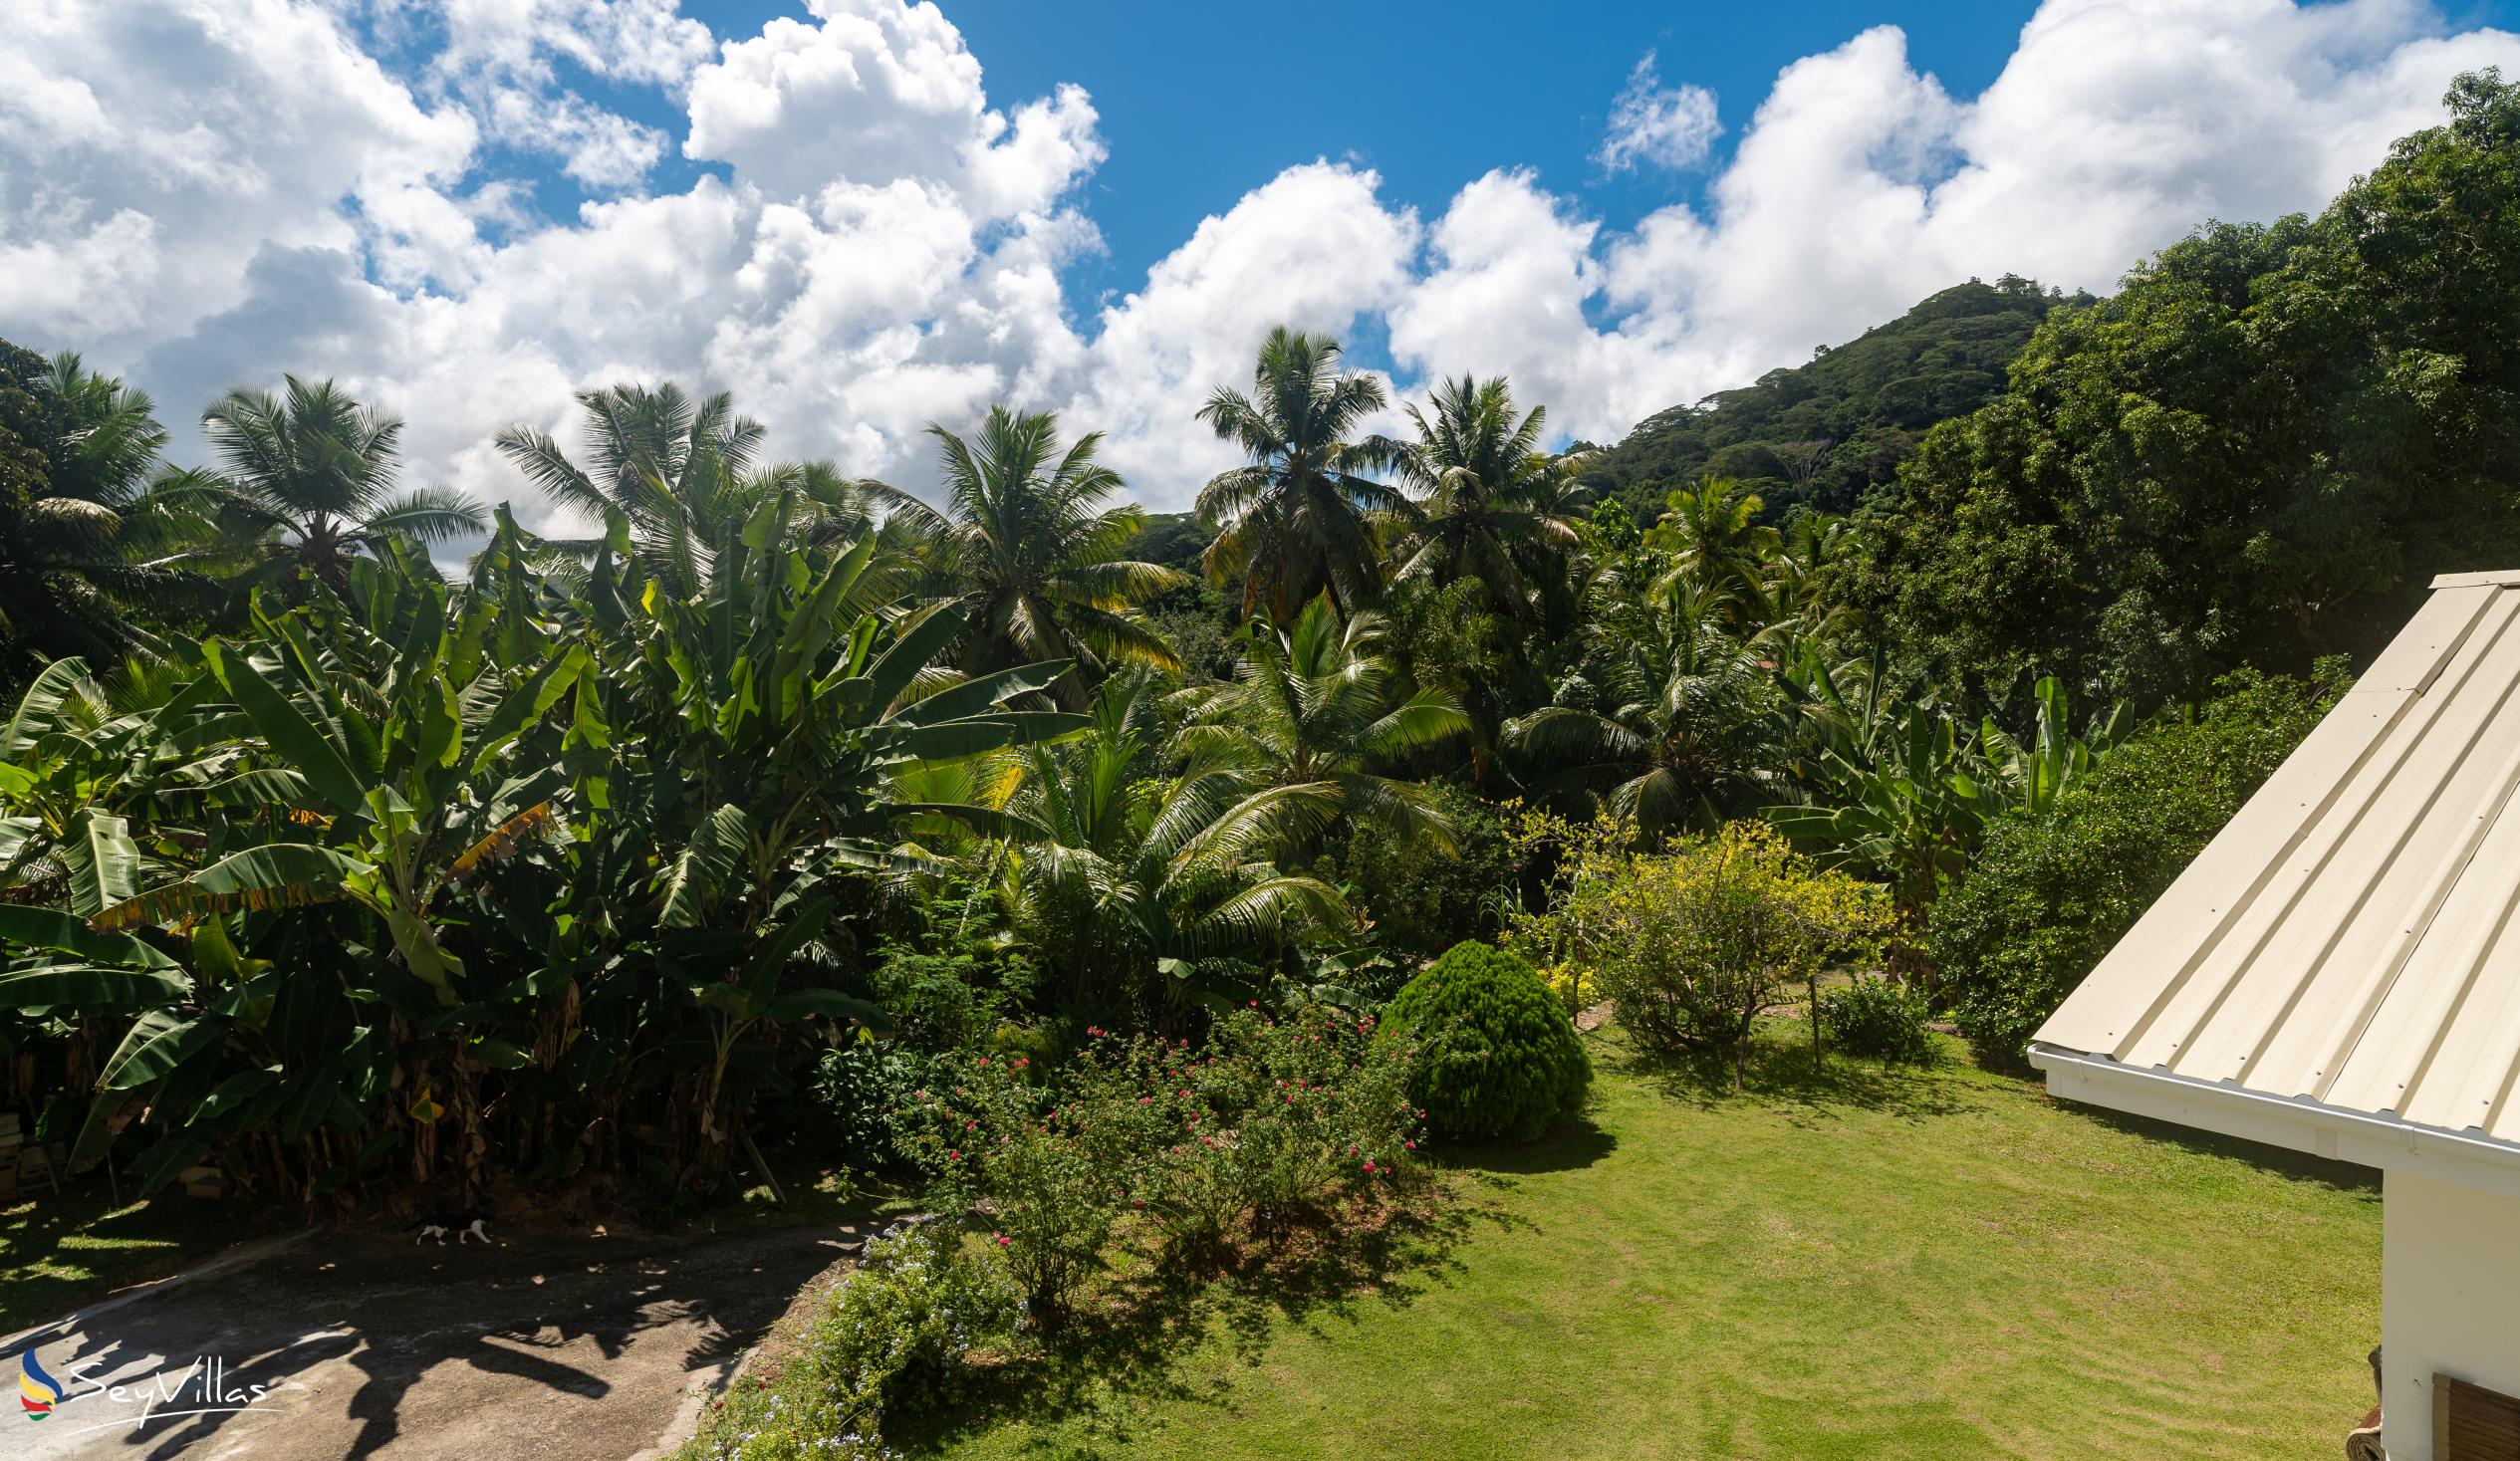 Photo 10: Paul's Residence - Outdoor area - Mahé (Seychelles)